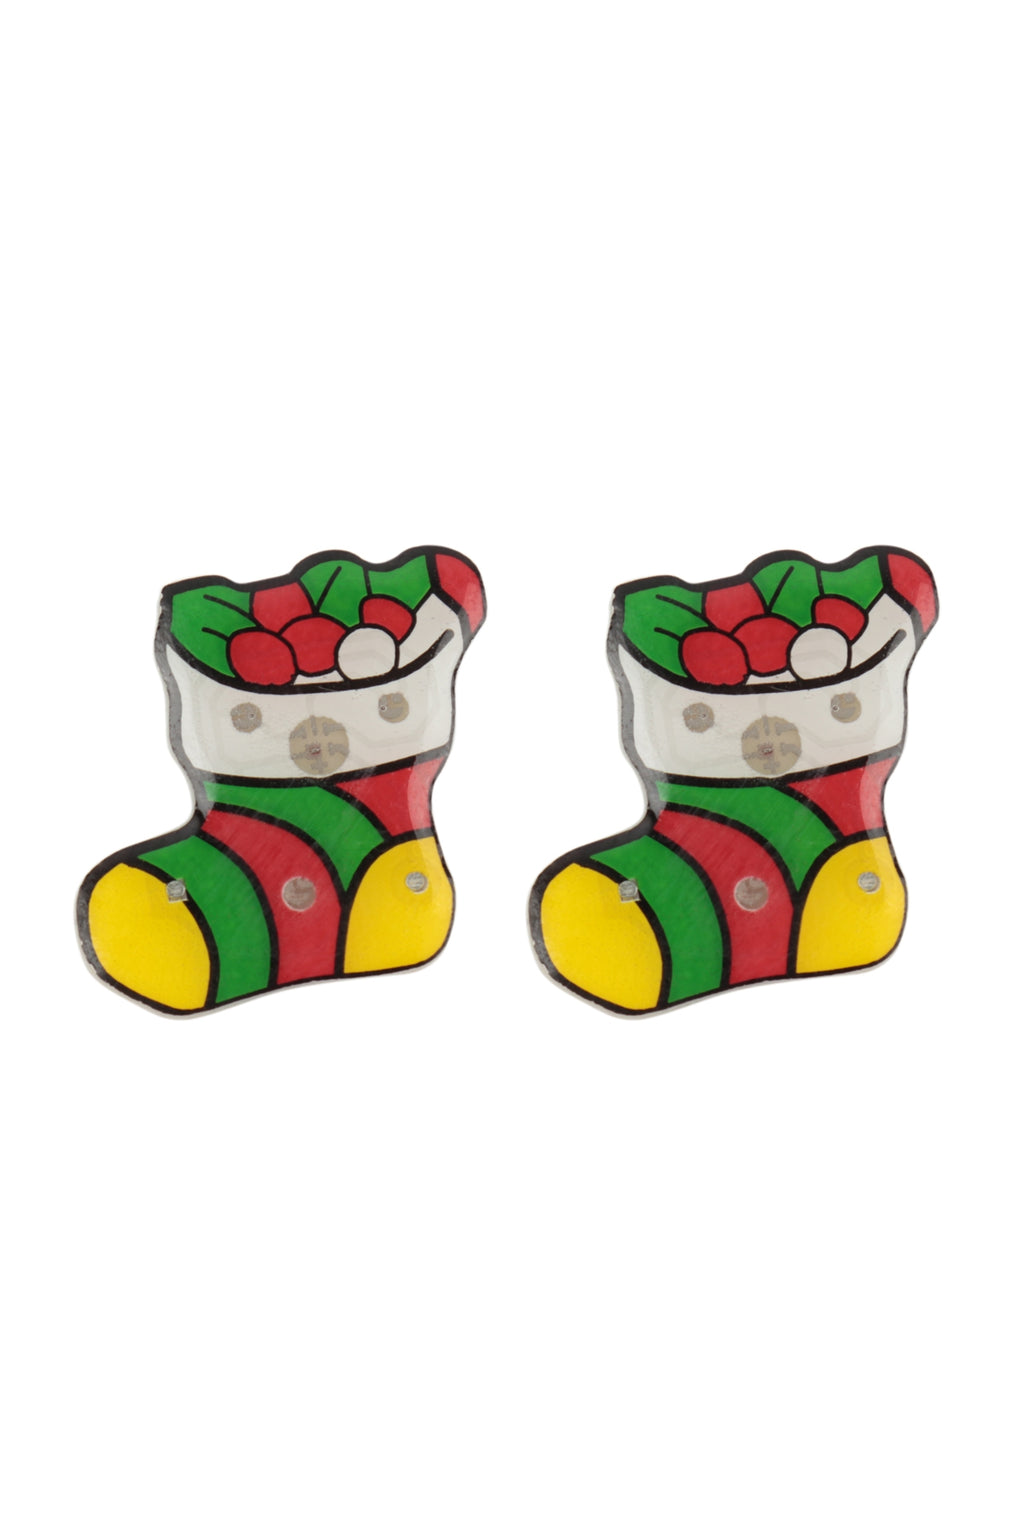 Xmas Socks Light Up Earrings Multicolor - Pack of 6